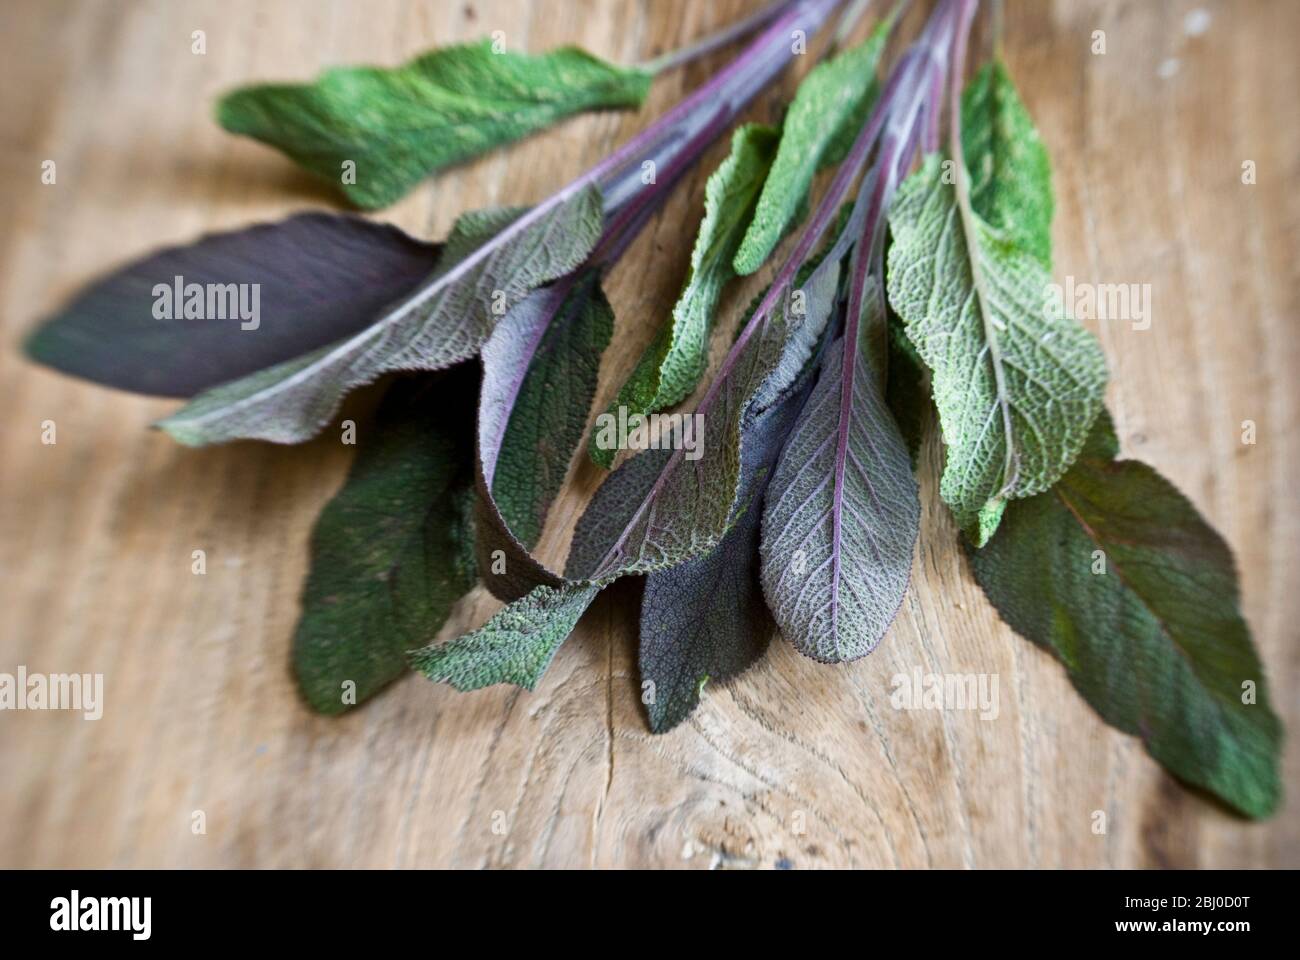 Appena tagliato rametto di foglie di salvia viola su superficie di legno vecchia - Foto Stock